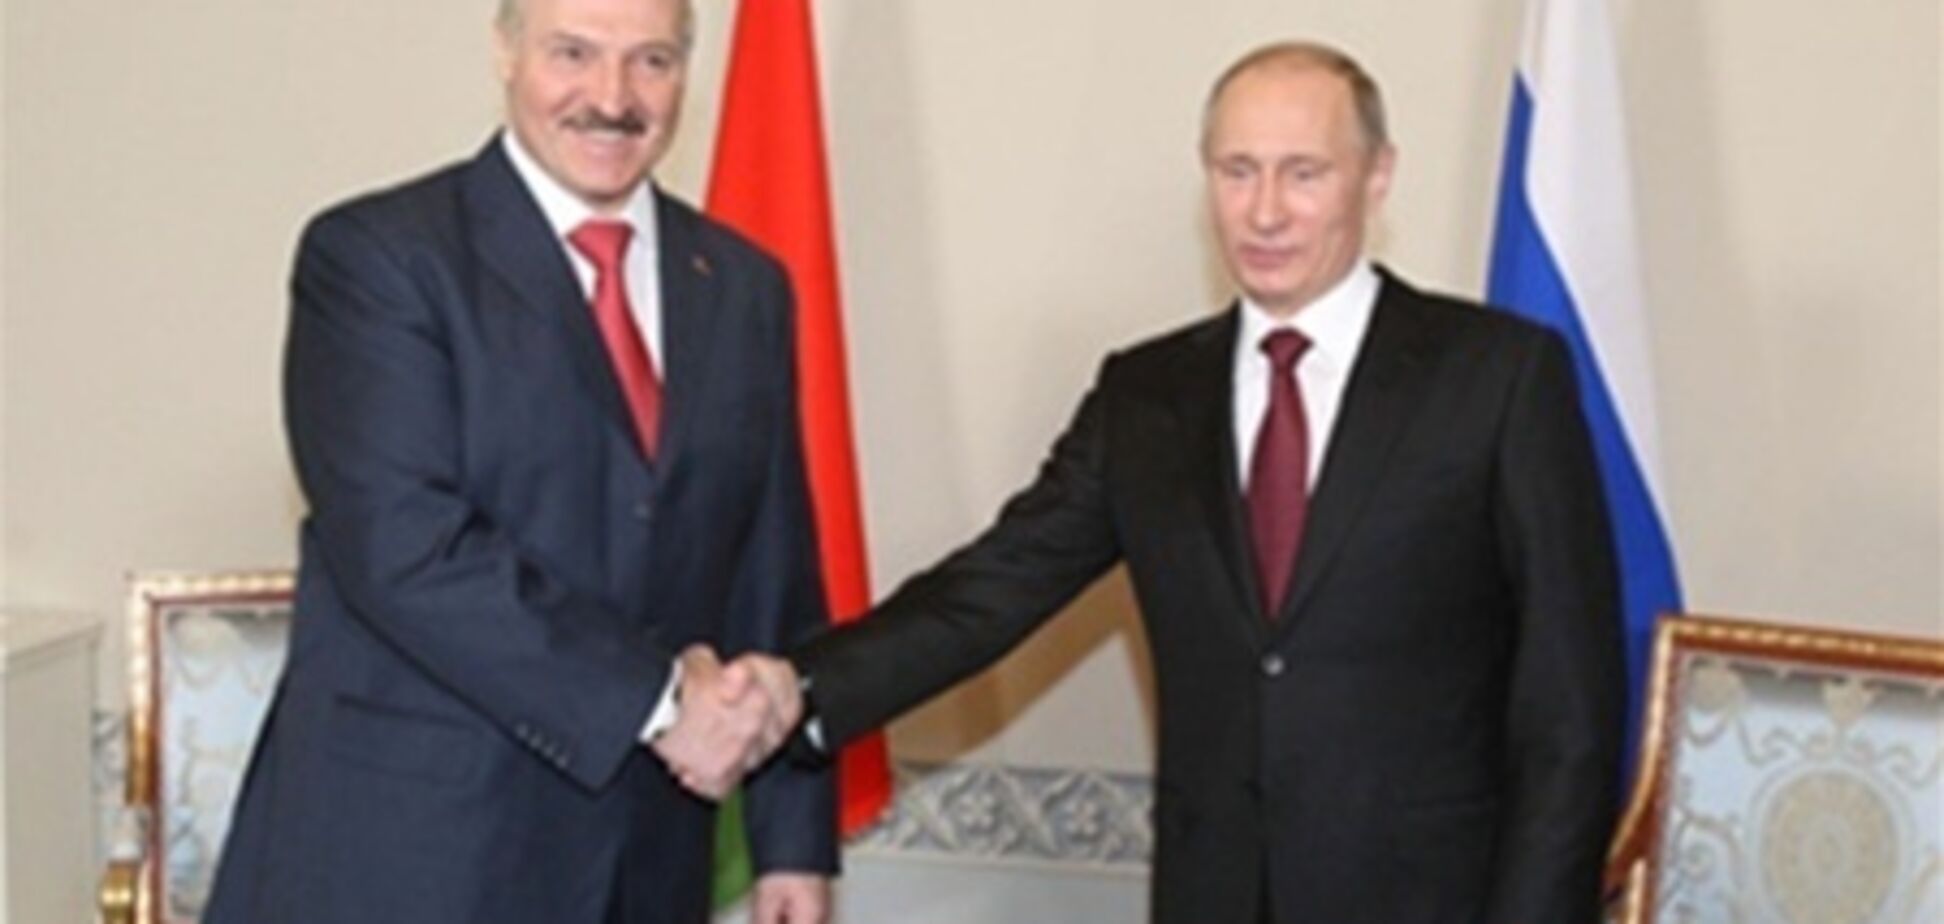 Лукашенко наградил Путина орденом Дружбы народов